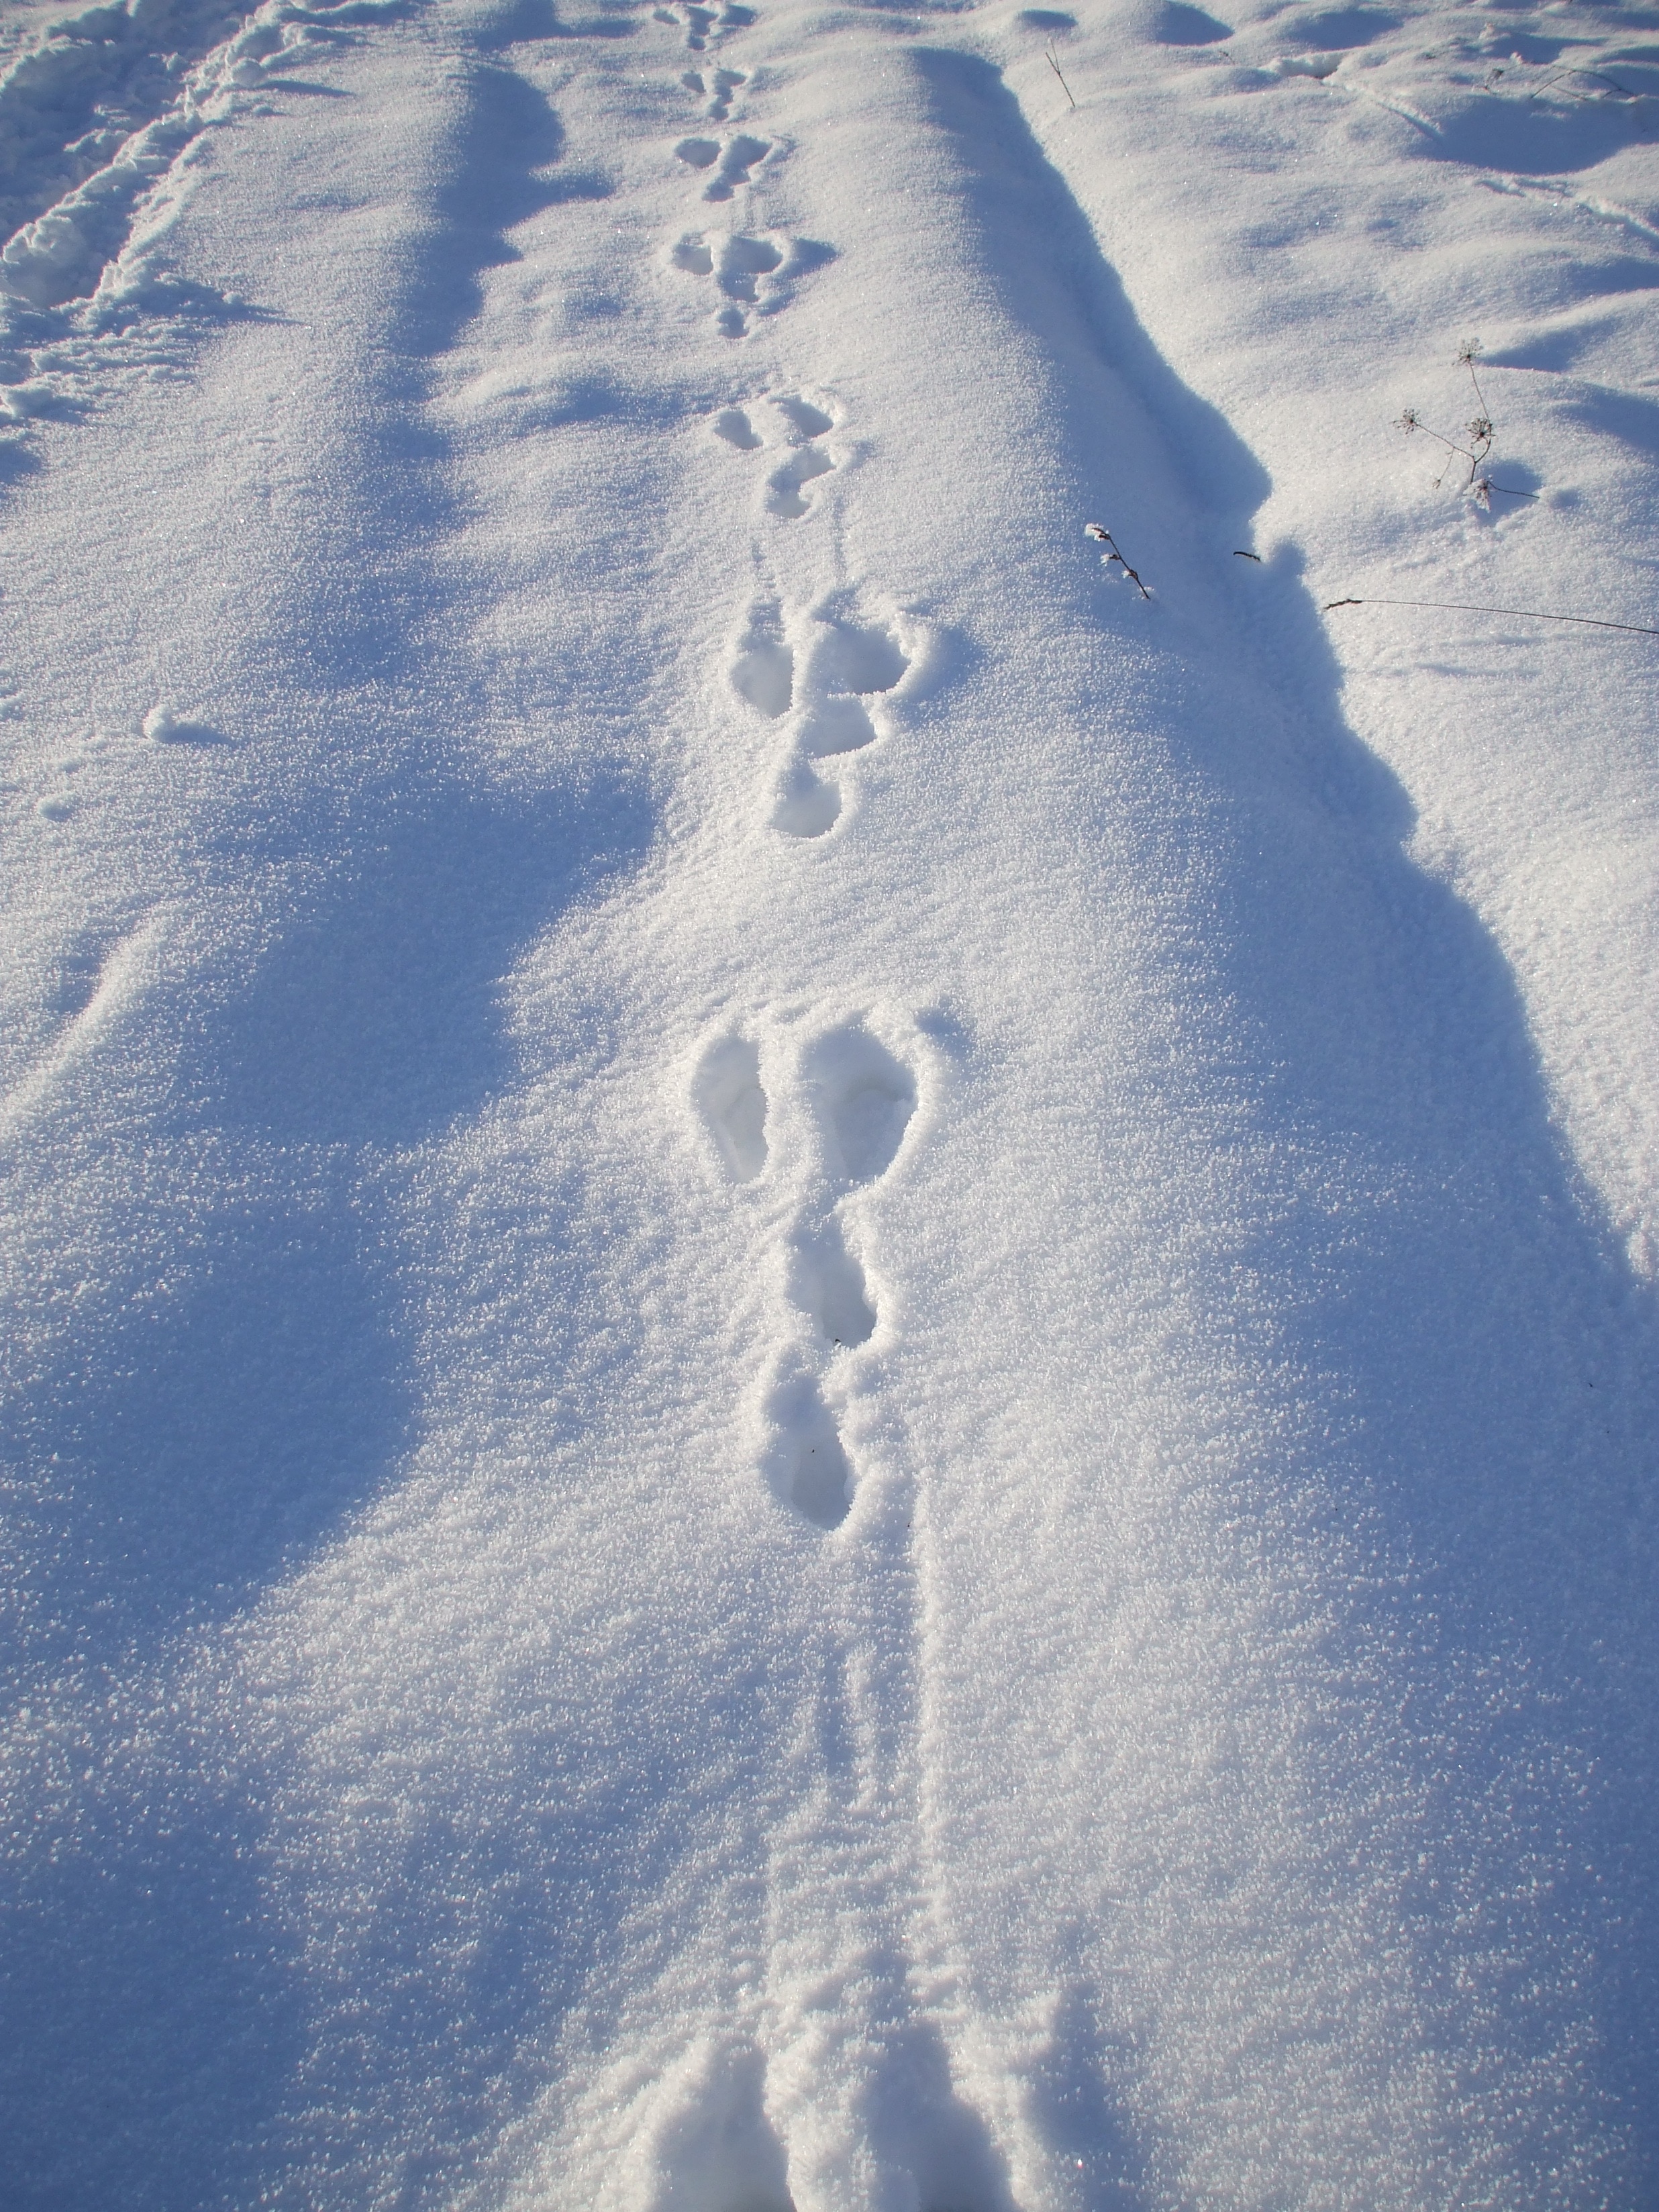 Заячьи и лисьи следы на снегу. Следы зайца русака. Заячьи следы на снегу. Следы на снегу. Следы зайца на снегу.